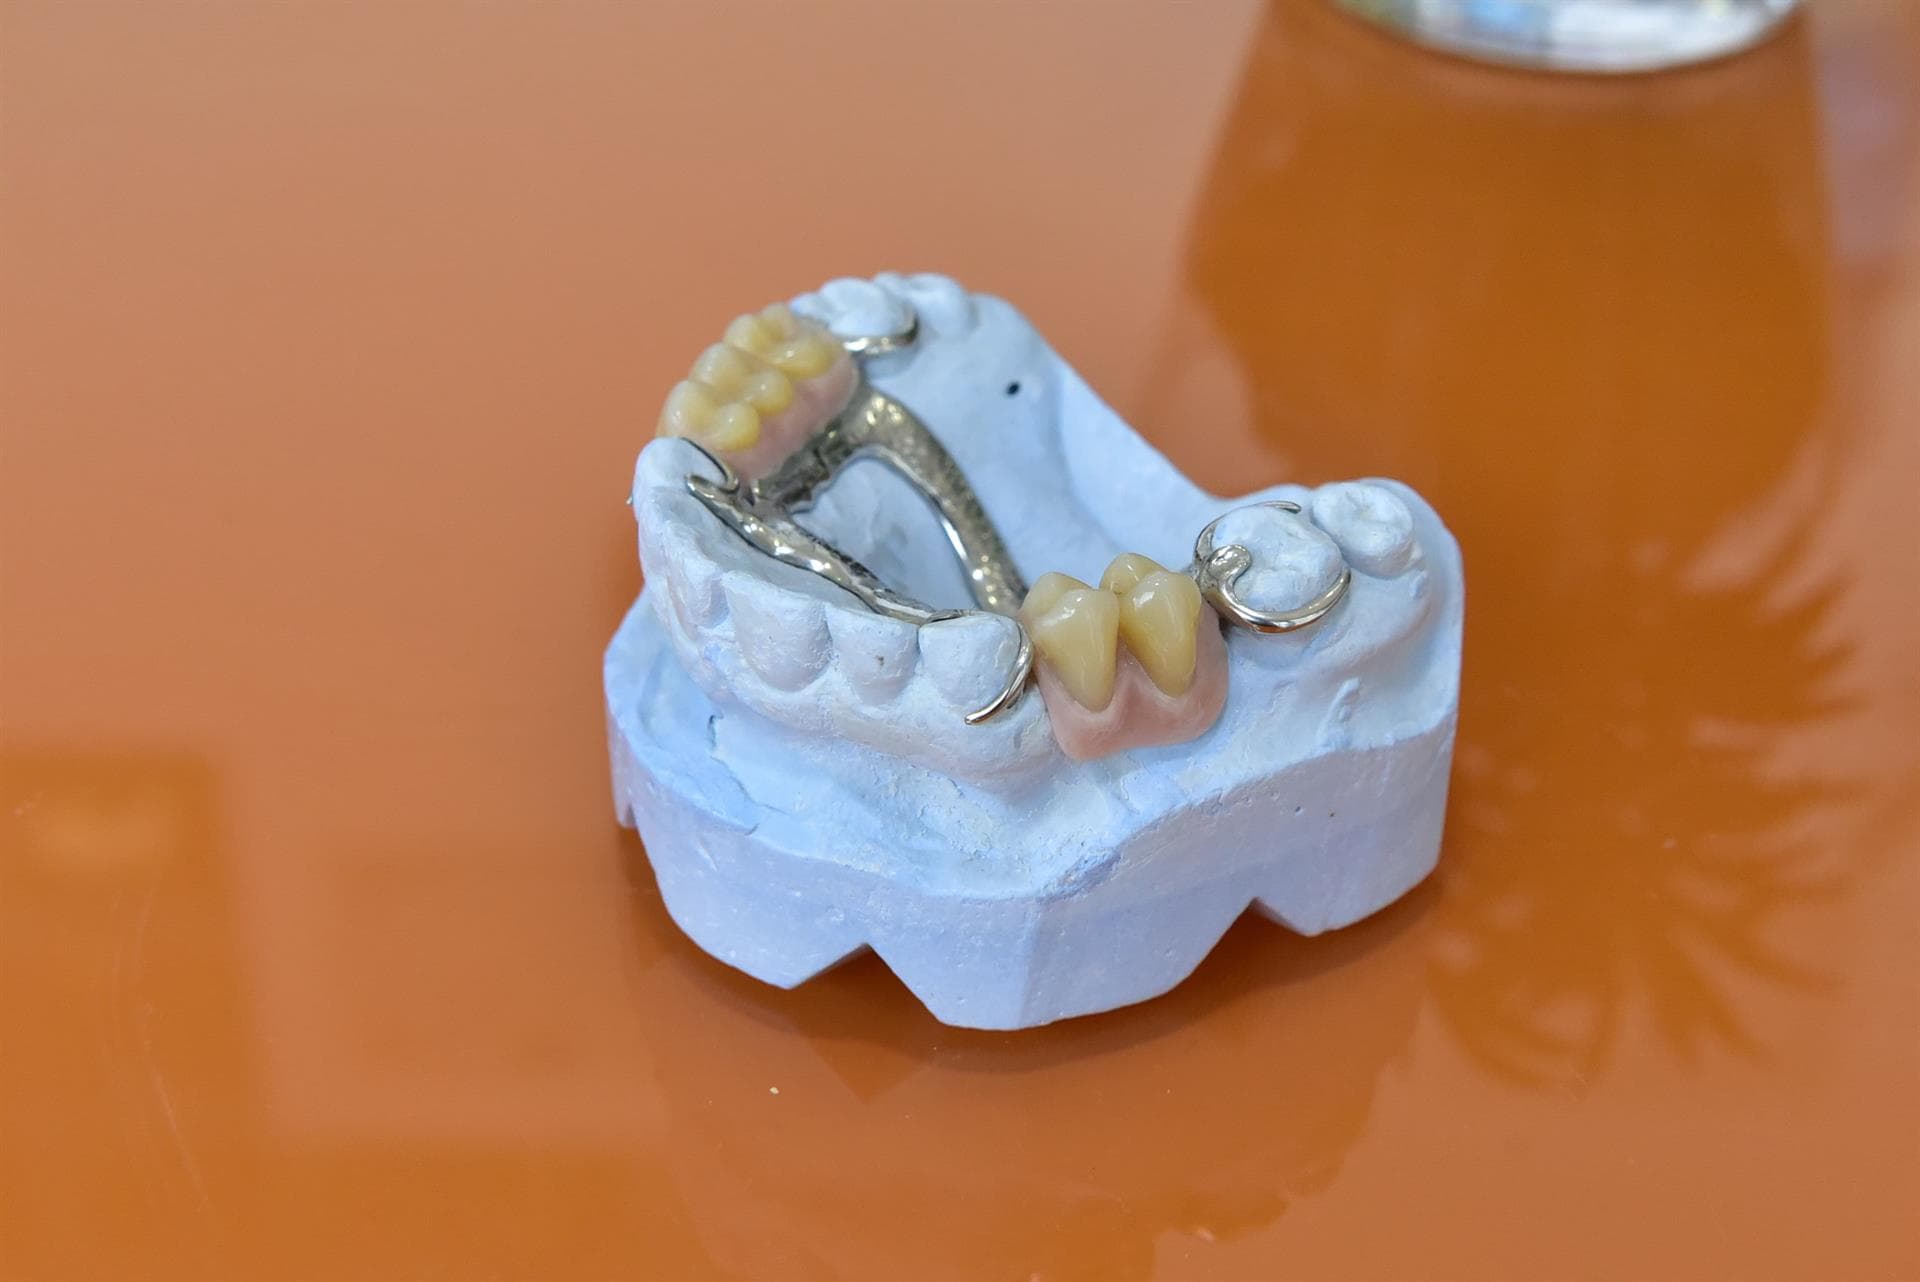 Preguntas frecuentes sobre implantes dentales